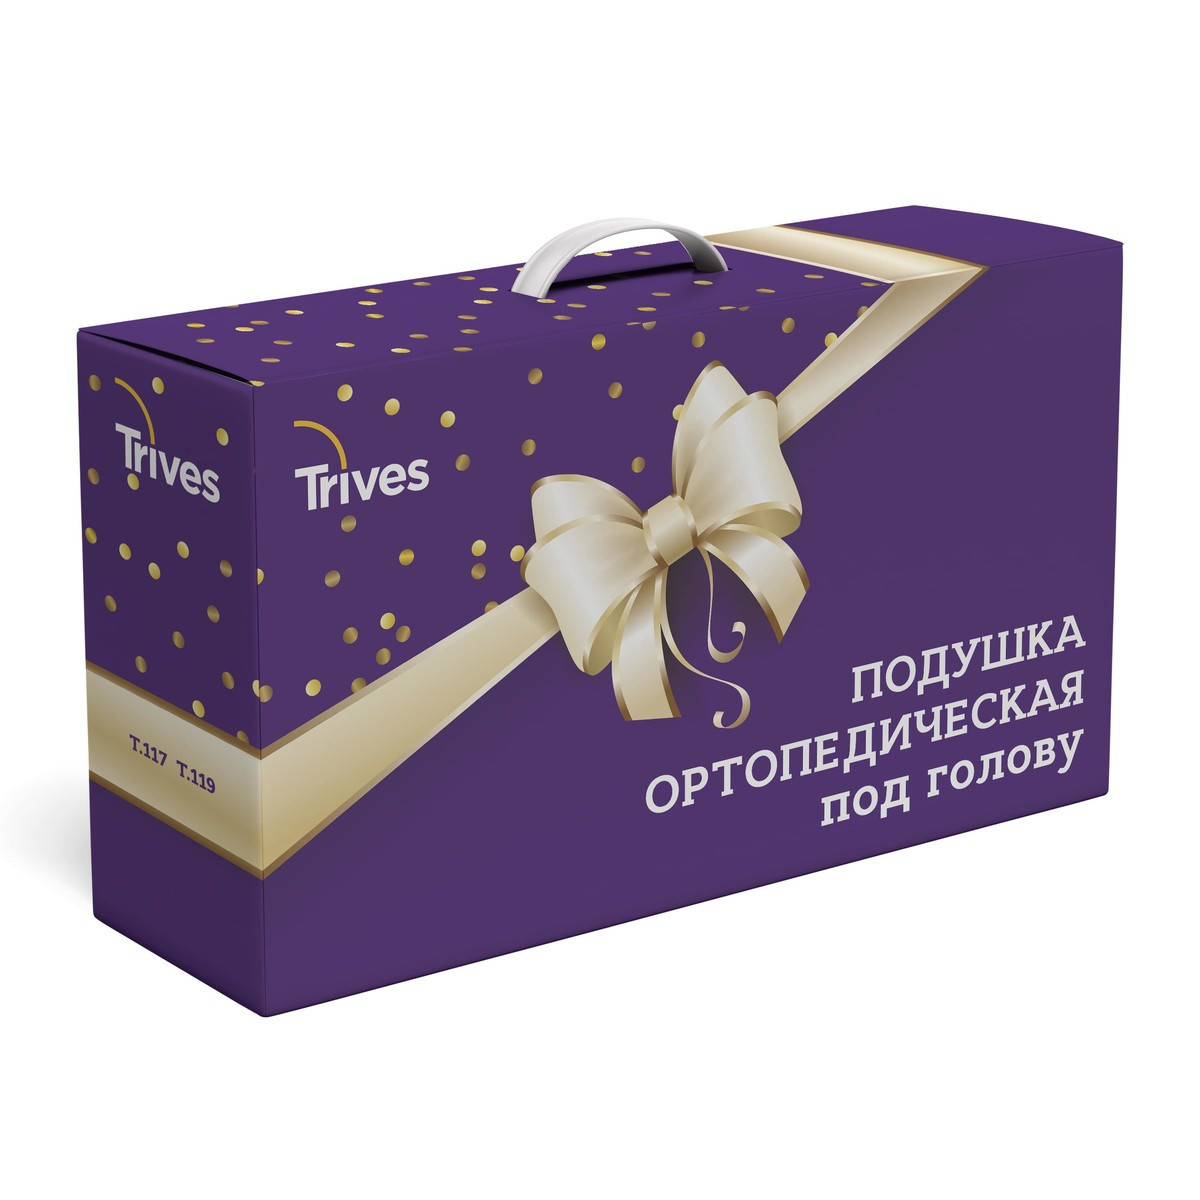 

Ортопедическая подушка с эффектом памяти Trives Т.117 (в подарочной упаковке)